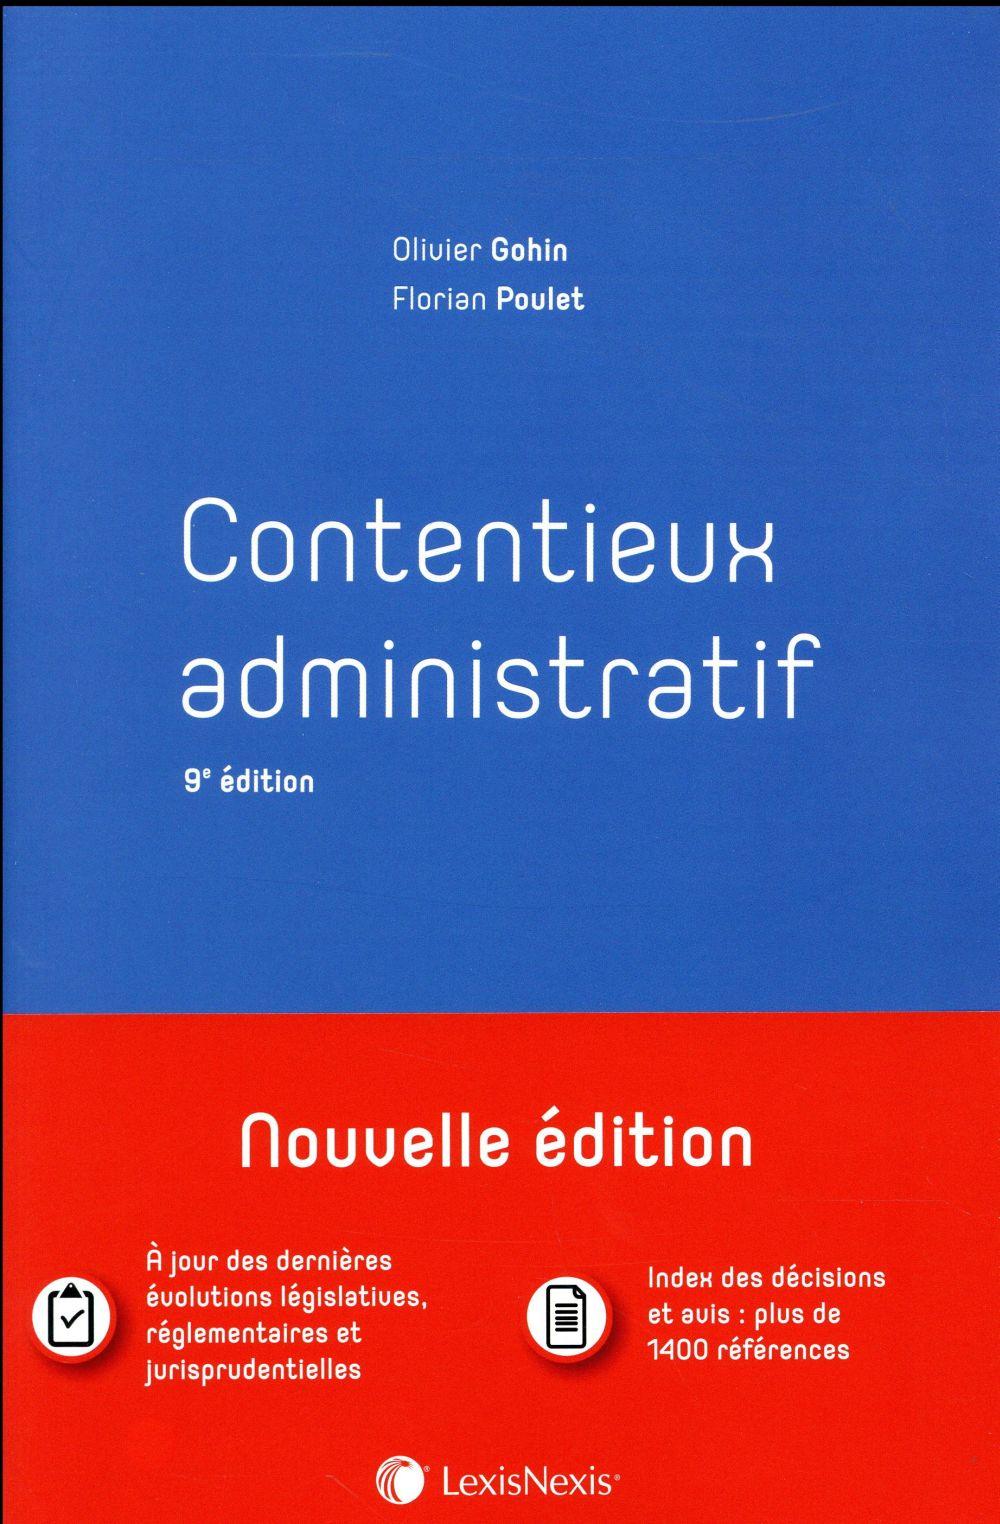 Vente Livre :                                    Contentieux administratif (9e édition)
- Florian Poulet  - Olivier Gohin                                     